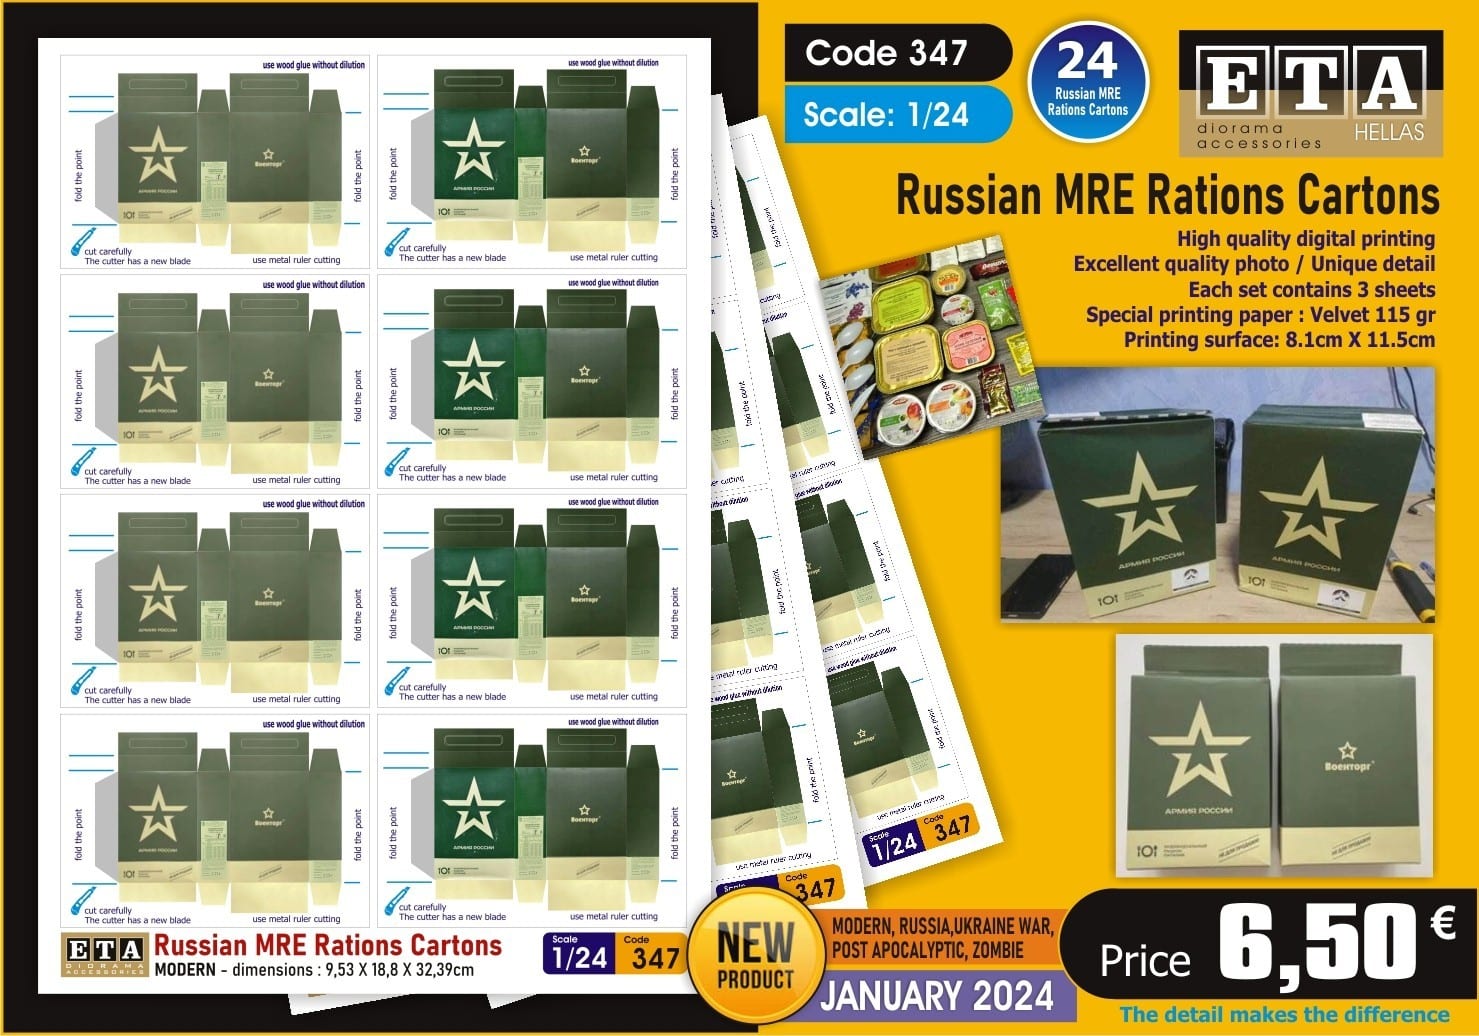 1/24 scale Russian & U.S MRE